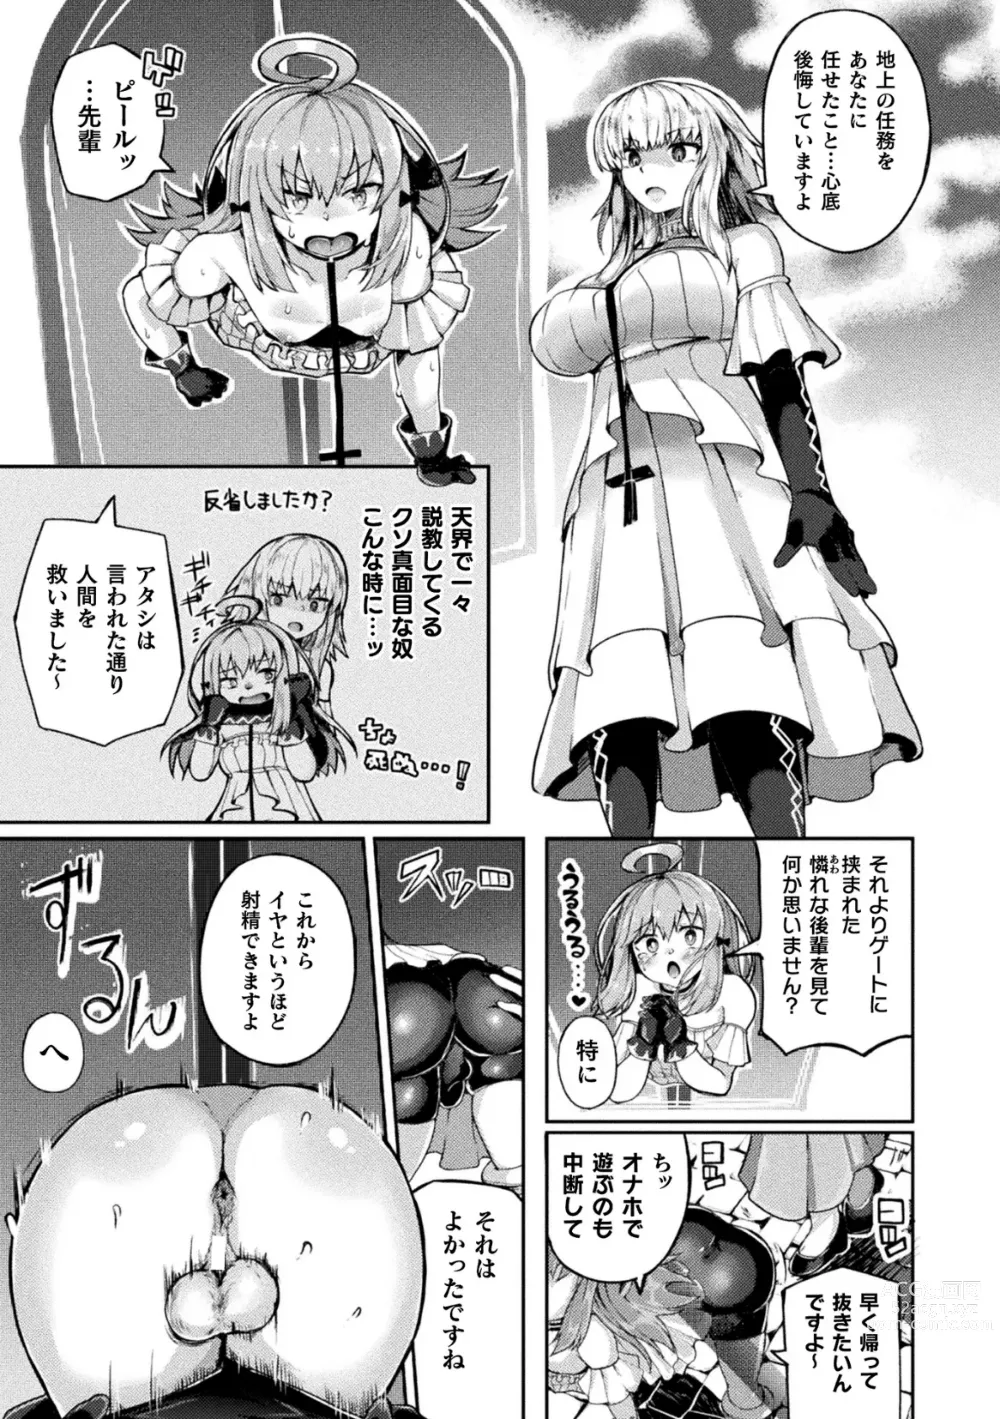 Page 71 of manga 2D Comic Magazine Futanari Kabe Sao Kabe Shiri Futanari Heroine Sakusei Iki Jigoku! Vol. 1